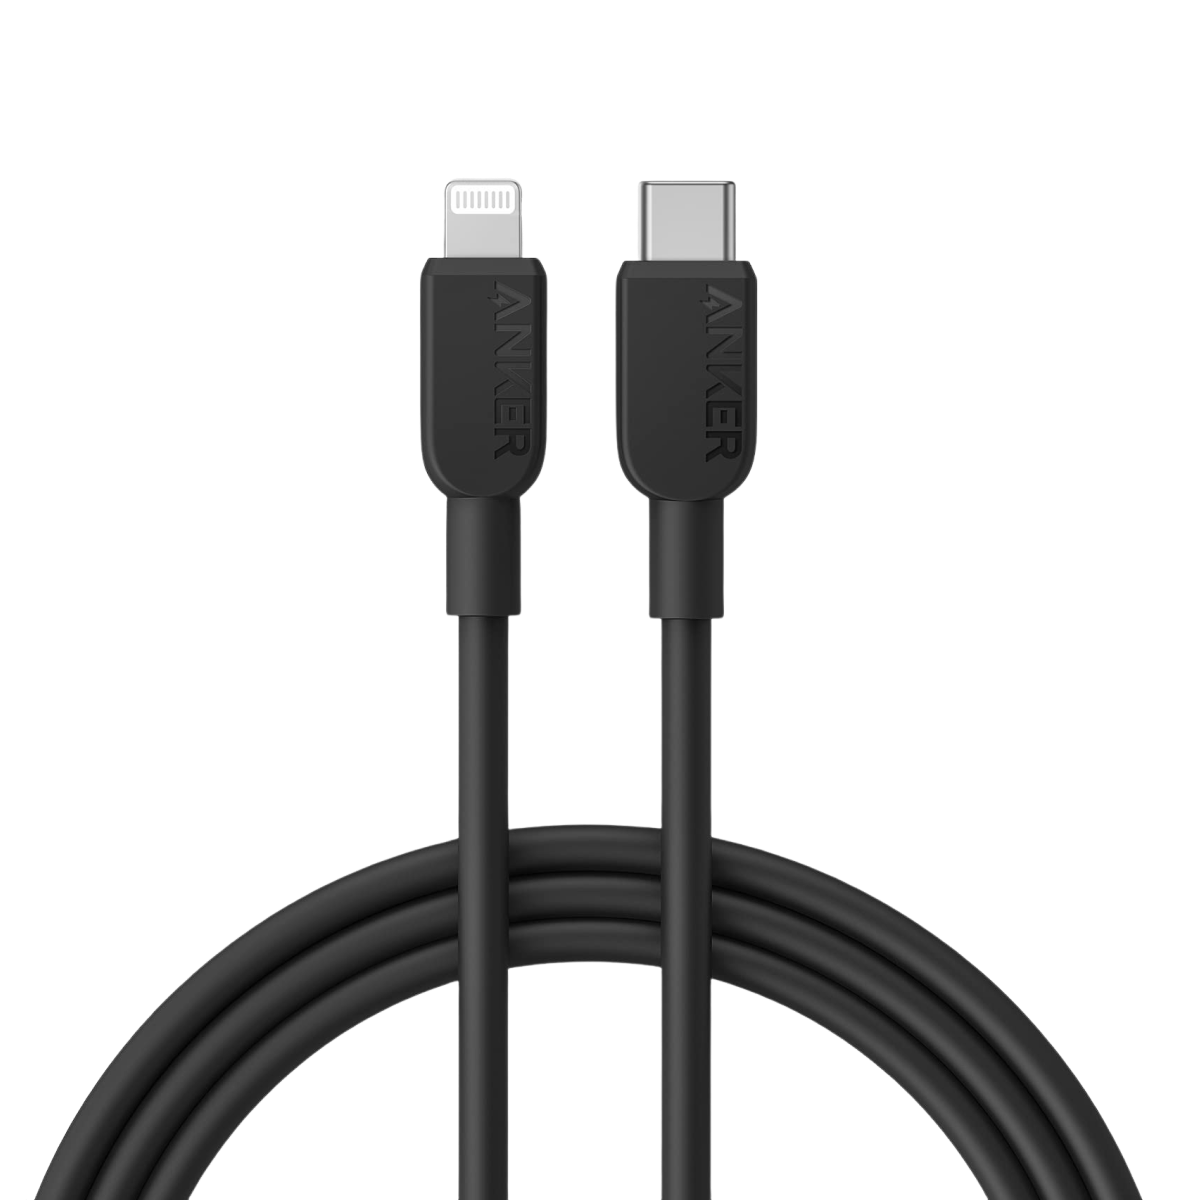 Anker <b>310</b> USB-C to Lightning Cable(3ft / 6ft /10ft)